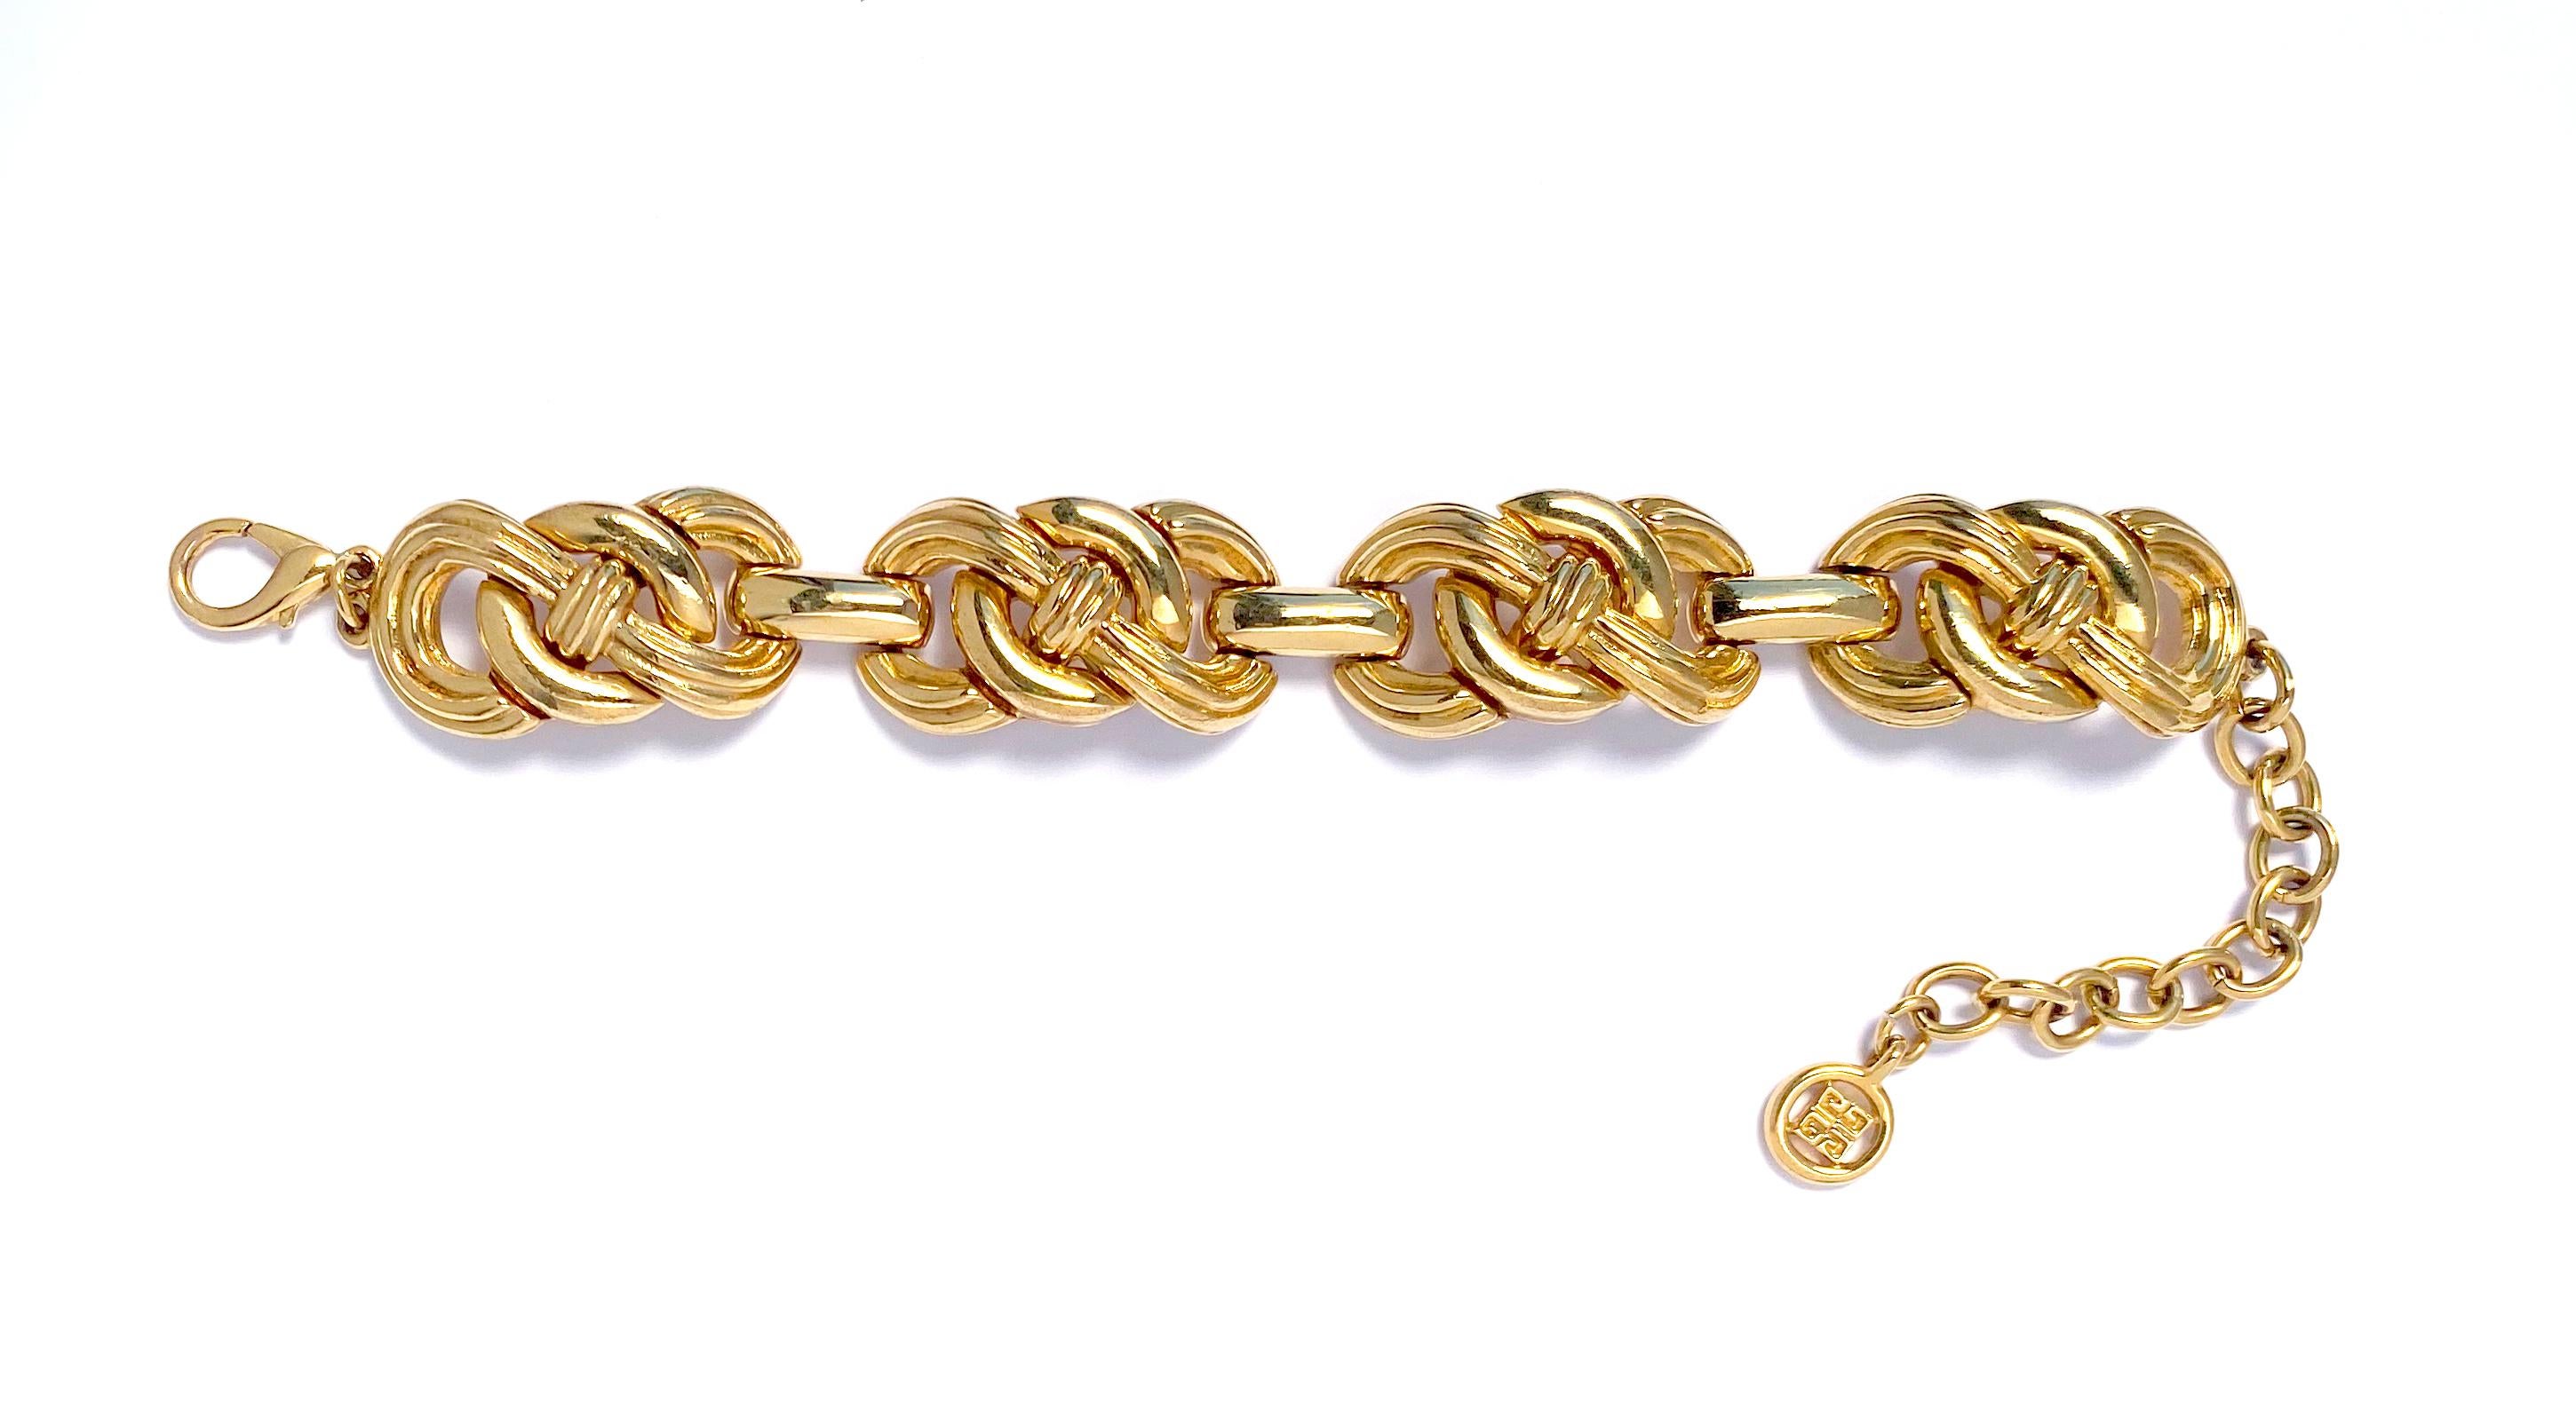 1980er Vintage Givenchy Kettenarmband mit großen verschnörkelten Gliedern aus Goldblech.  Dieses Vintage-Armband besteht aus polierten Gliedern in offener Knotenform mit Karabinerverschluss und Verlängerungskette mit Givenchy-Logo.   Armband misst